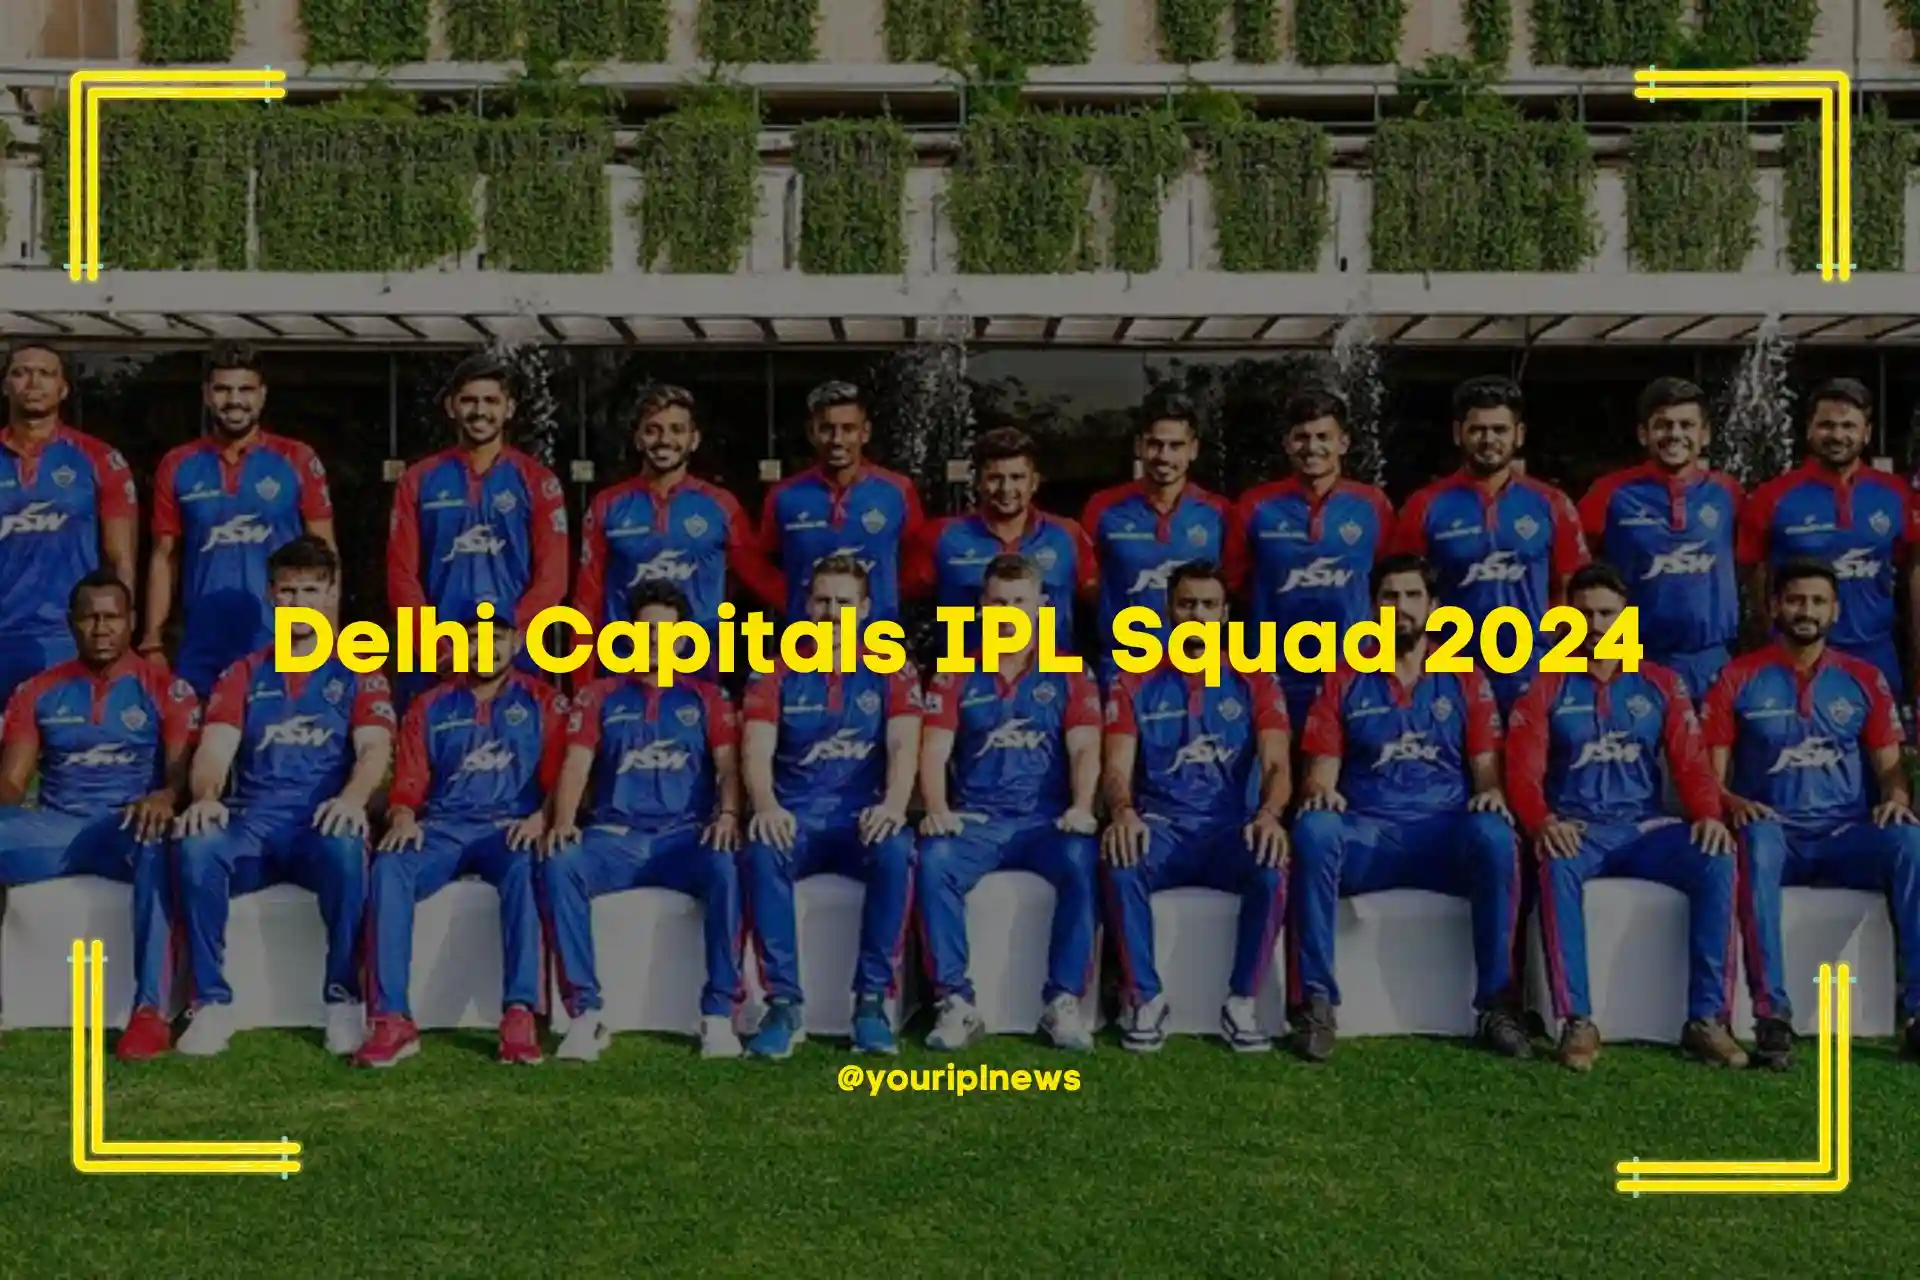 Delhi Capitals IPL Squad 2024